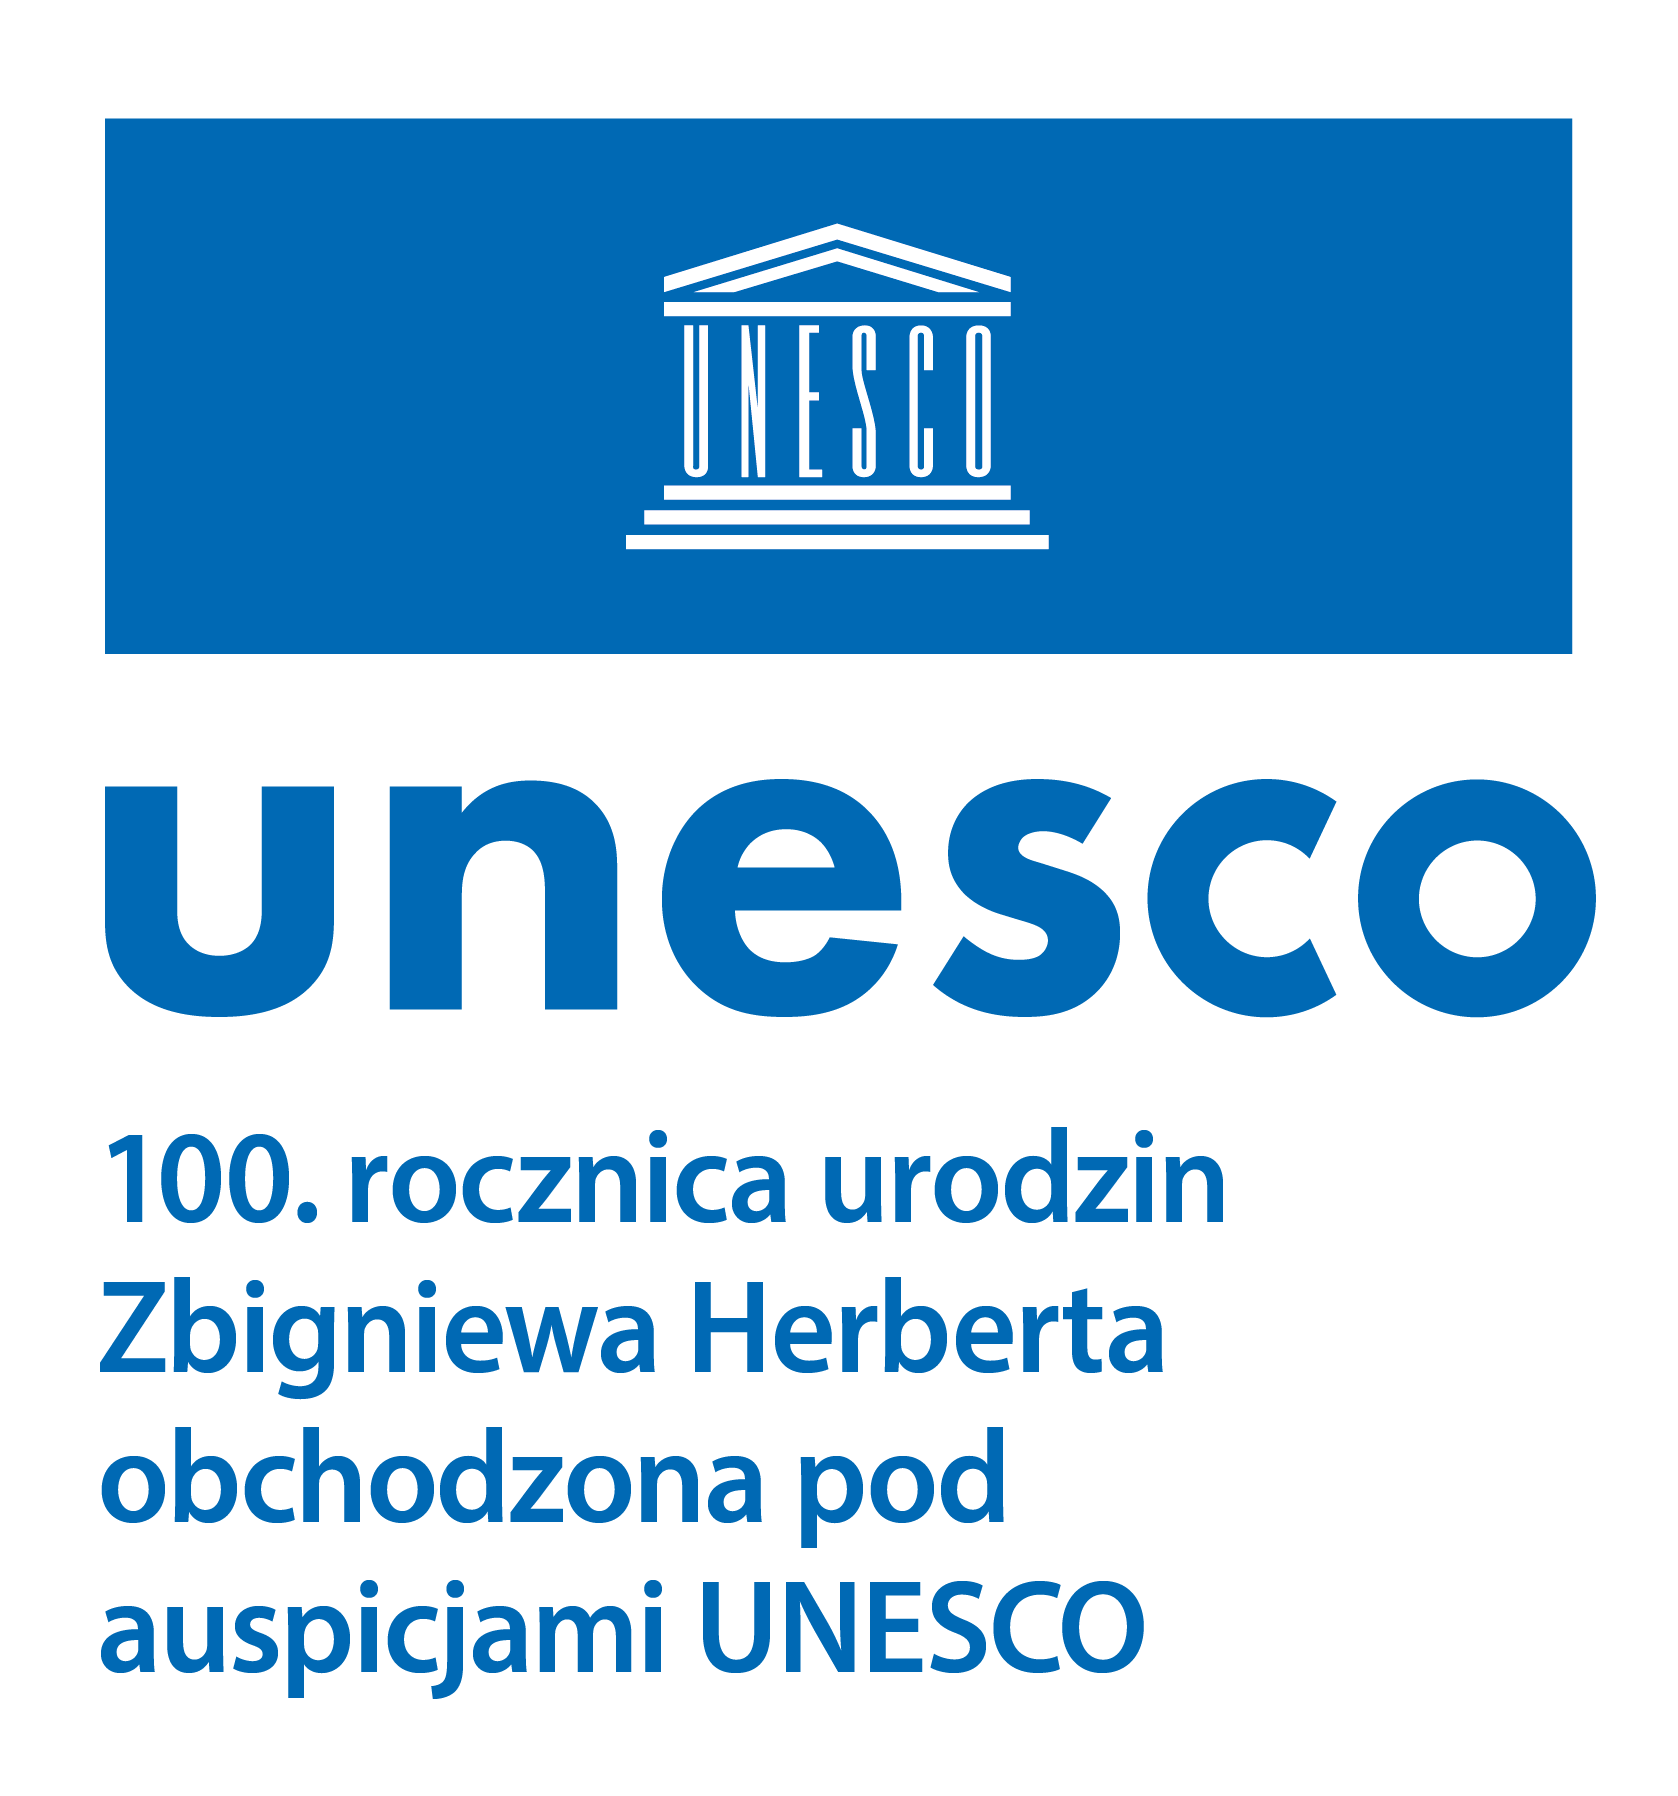 UNESCO 100. rocznica urodzin Zbigniewa Herberta